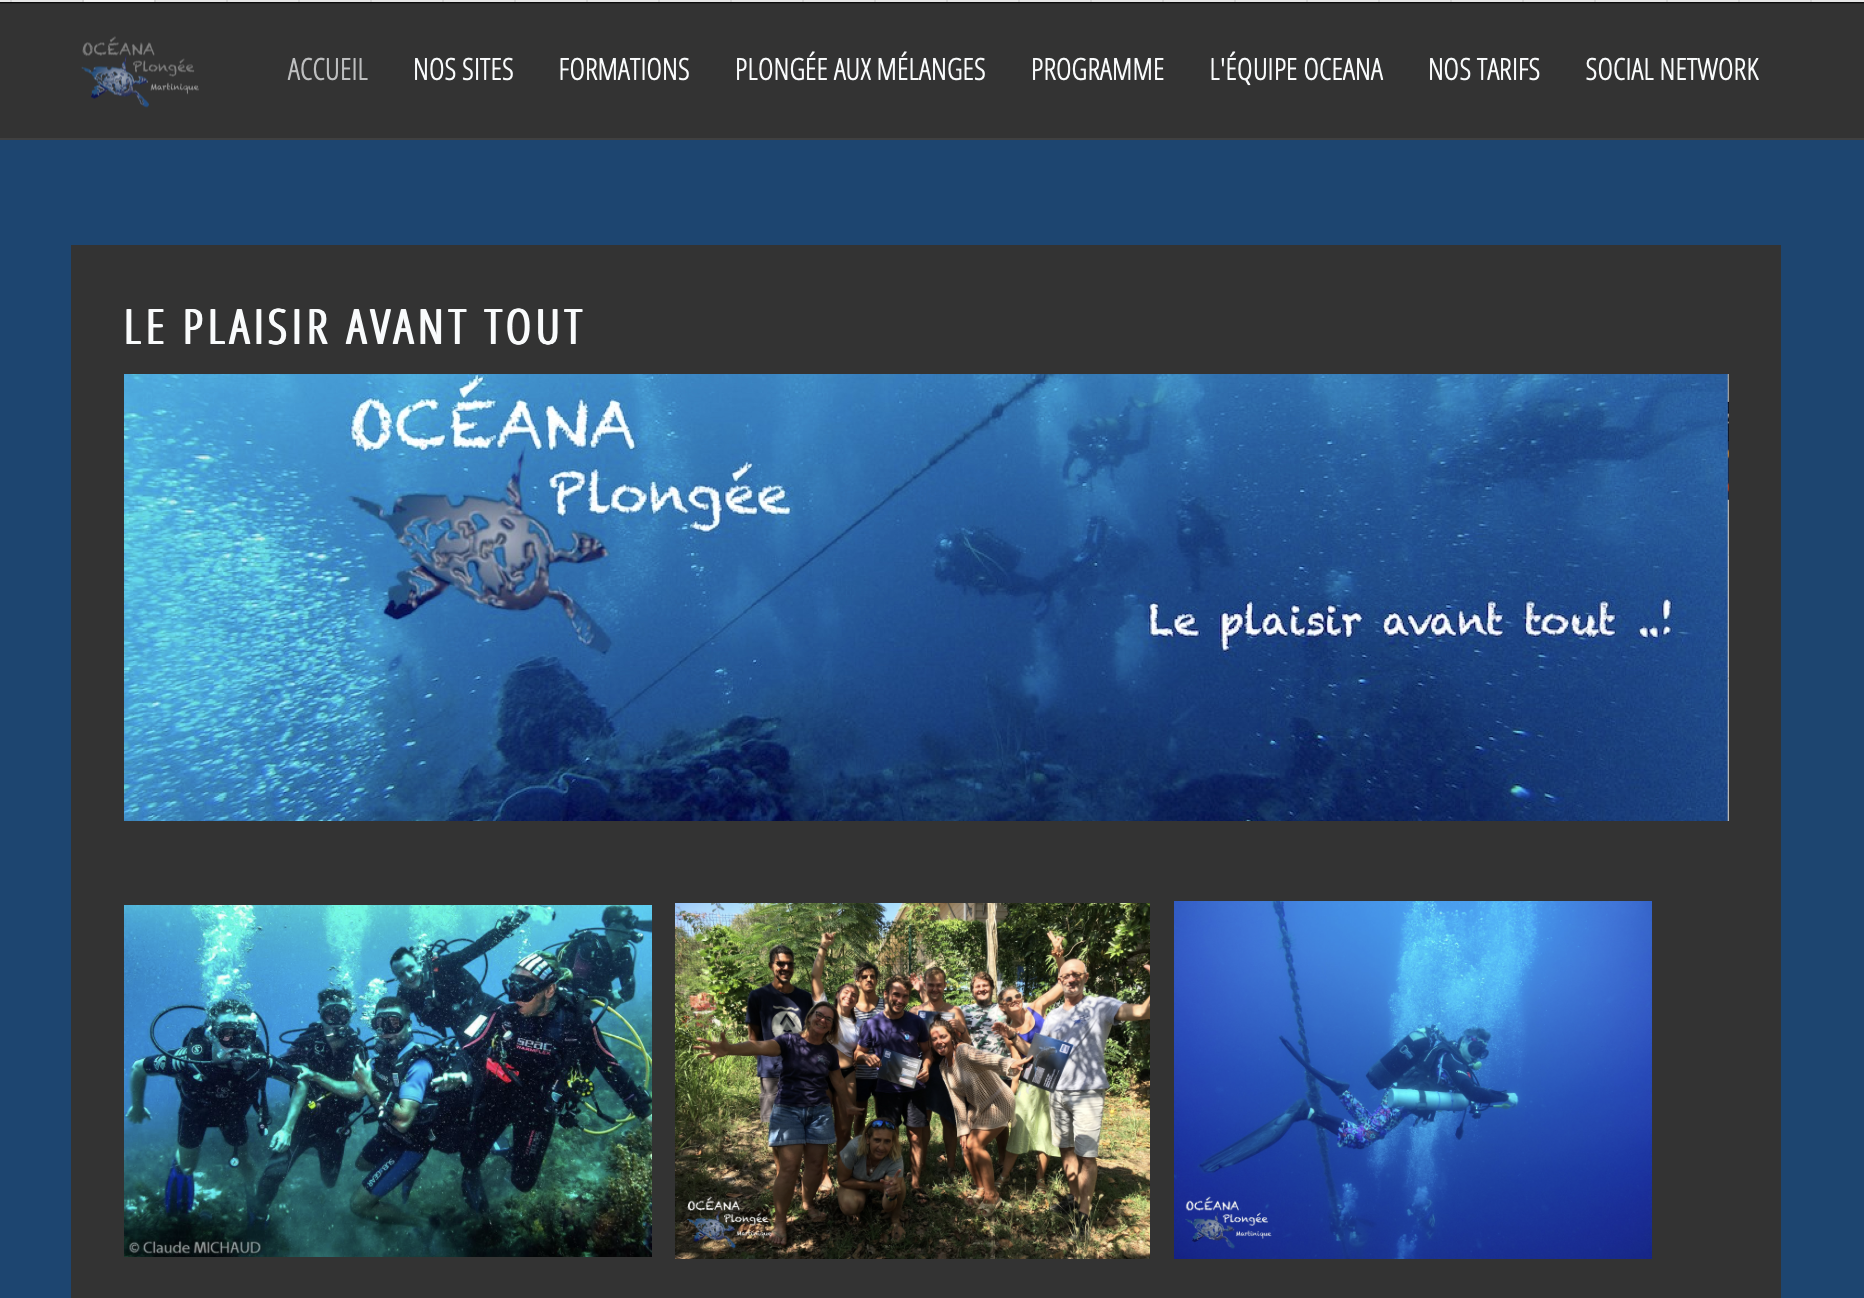 Nov 23 - Le nouveau site INTERNET OCEANA fait peau neuve